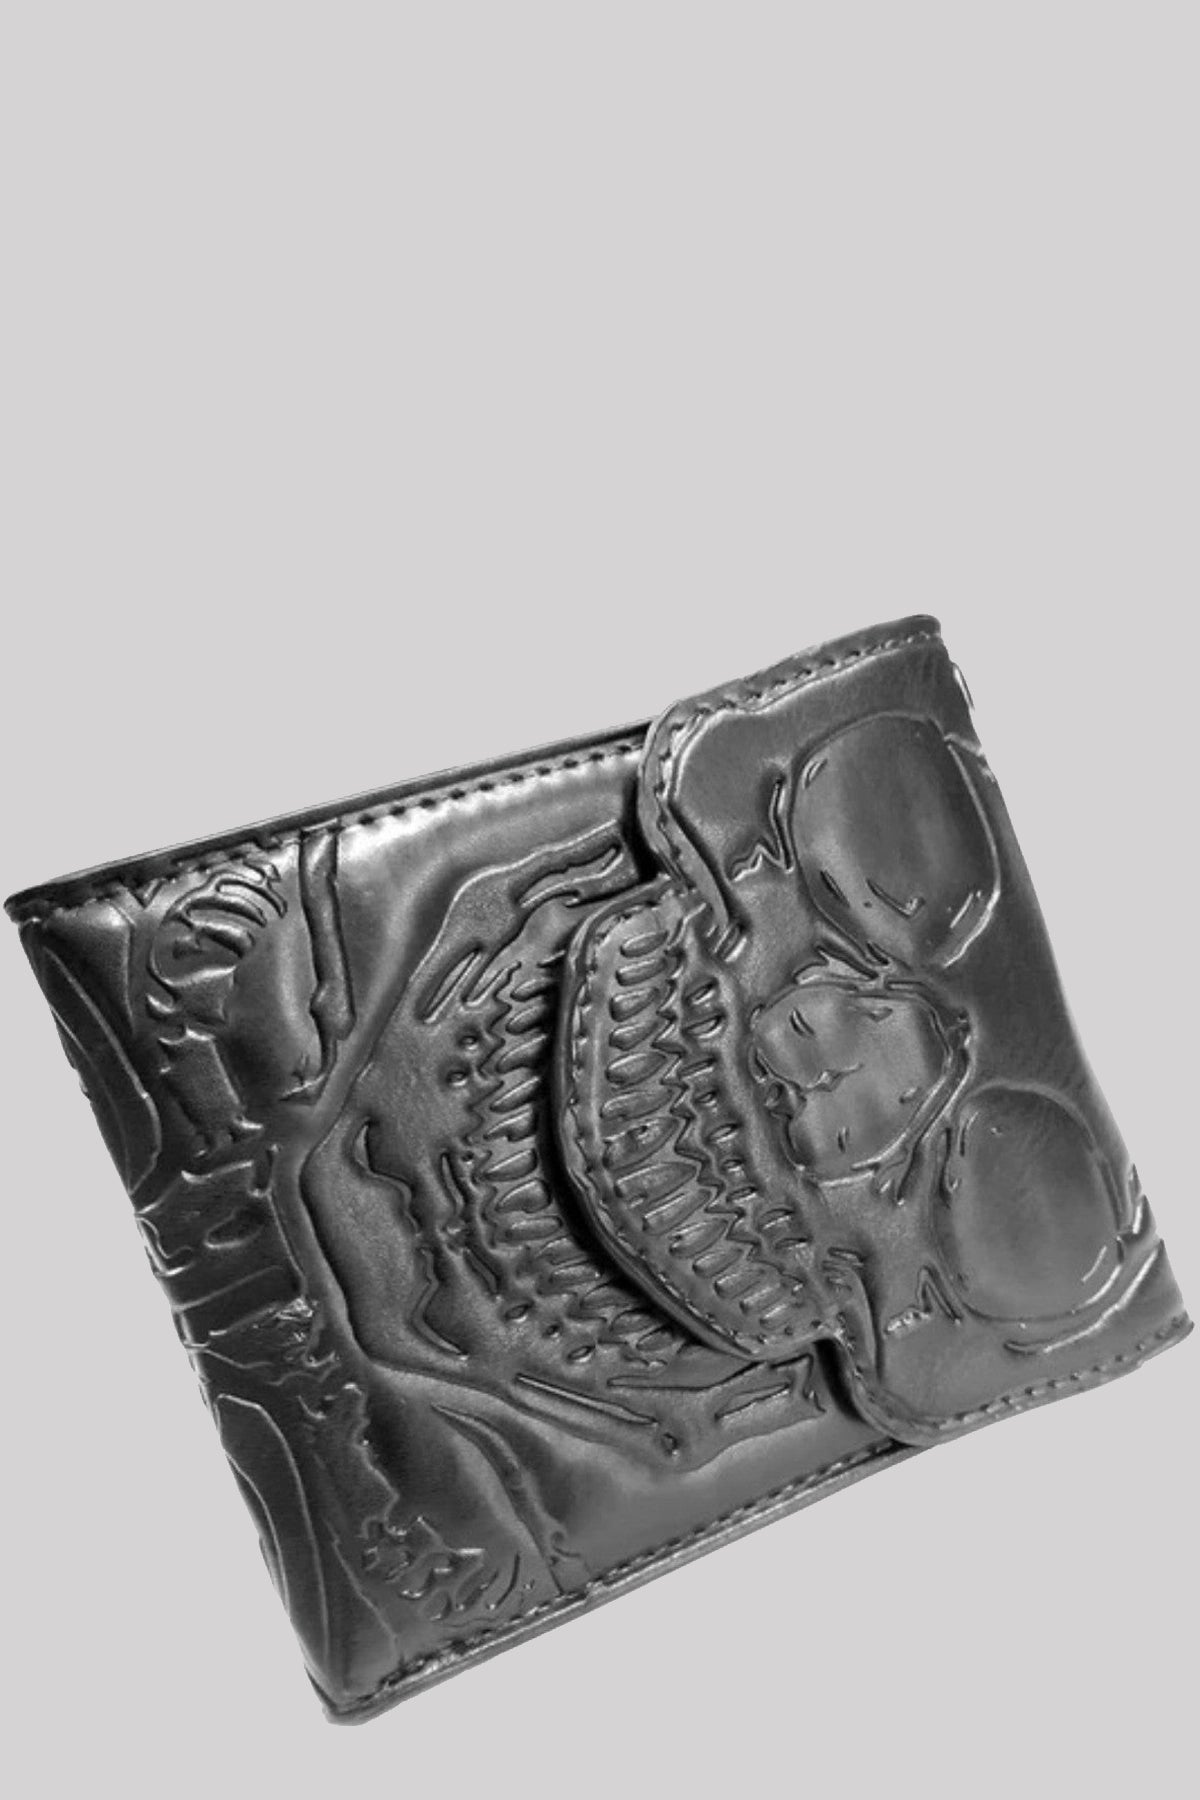 Kreepsville 666 Skull Ribcage Bi Fold Gothic Wallet